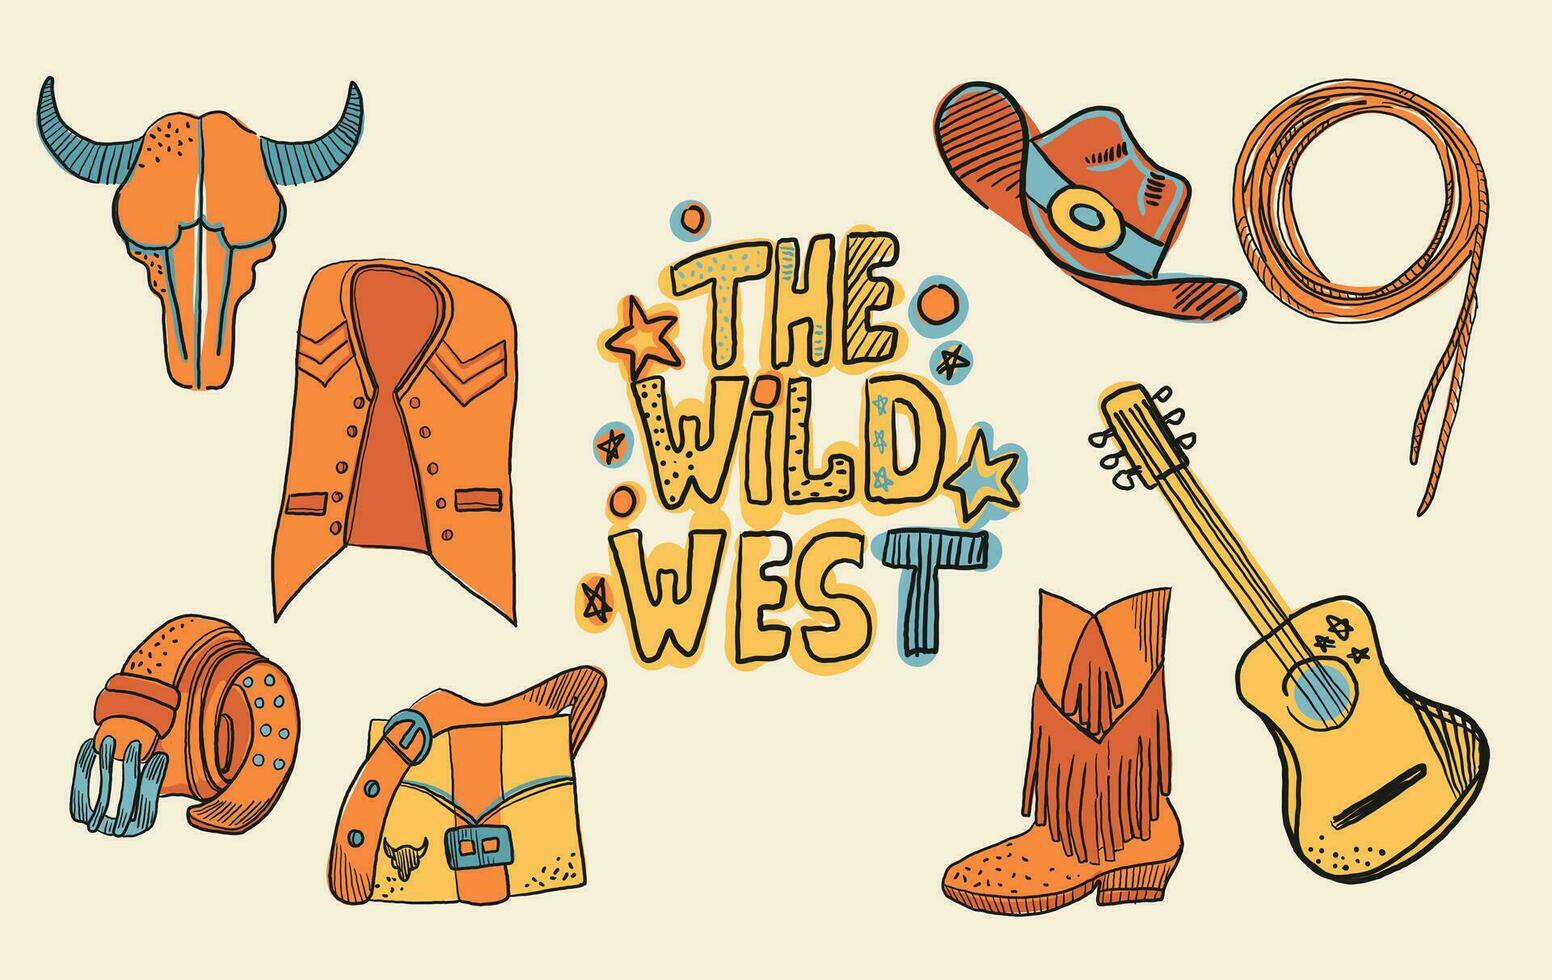 cow-boy occidental thème sauvage Ouest concept. comprend éléments tel comme une taureau crâne, ceinture, guitare, perte, chapeau, chaussure, guitare, sac, et gilet. vecteur